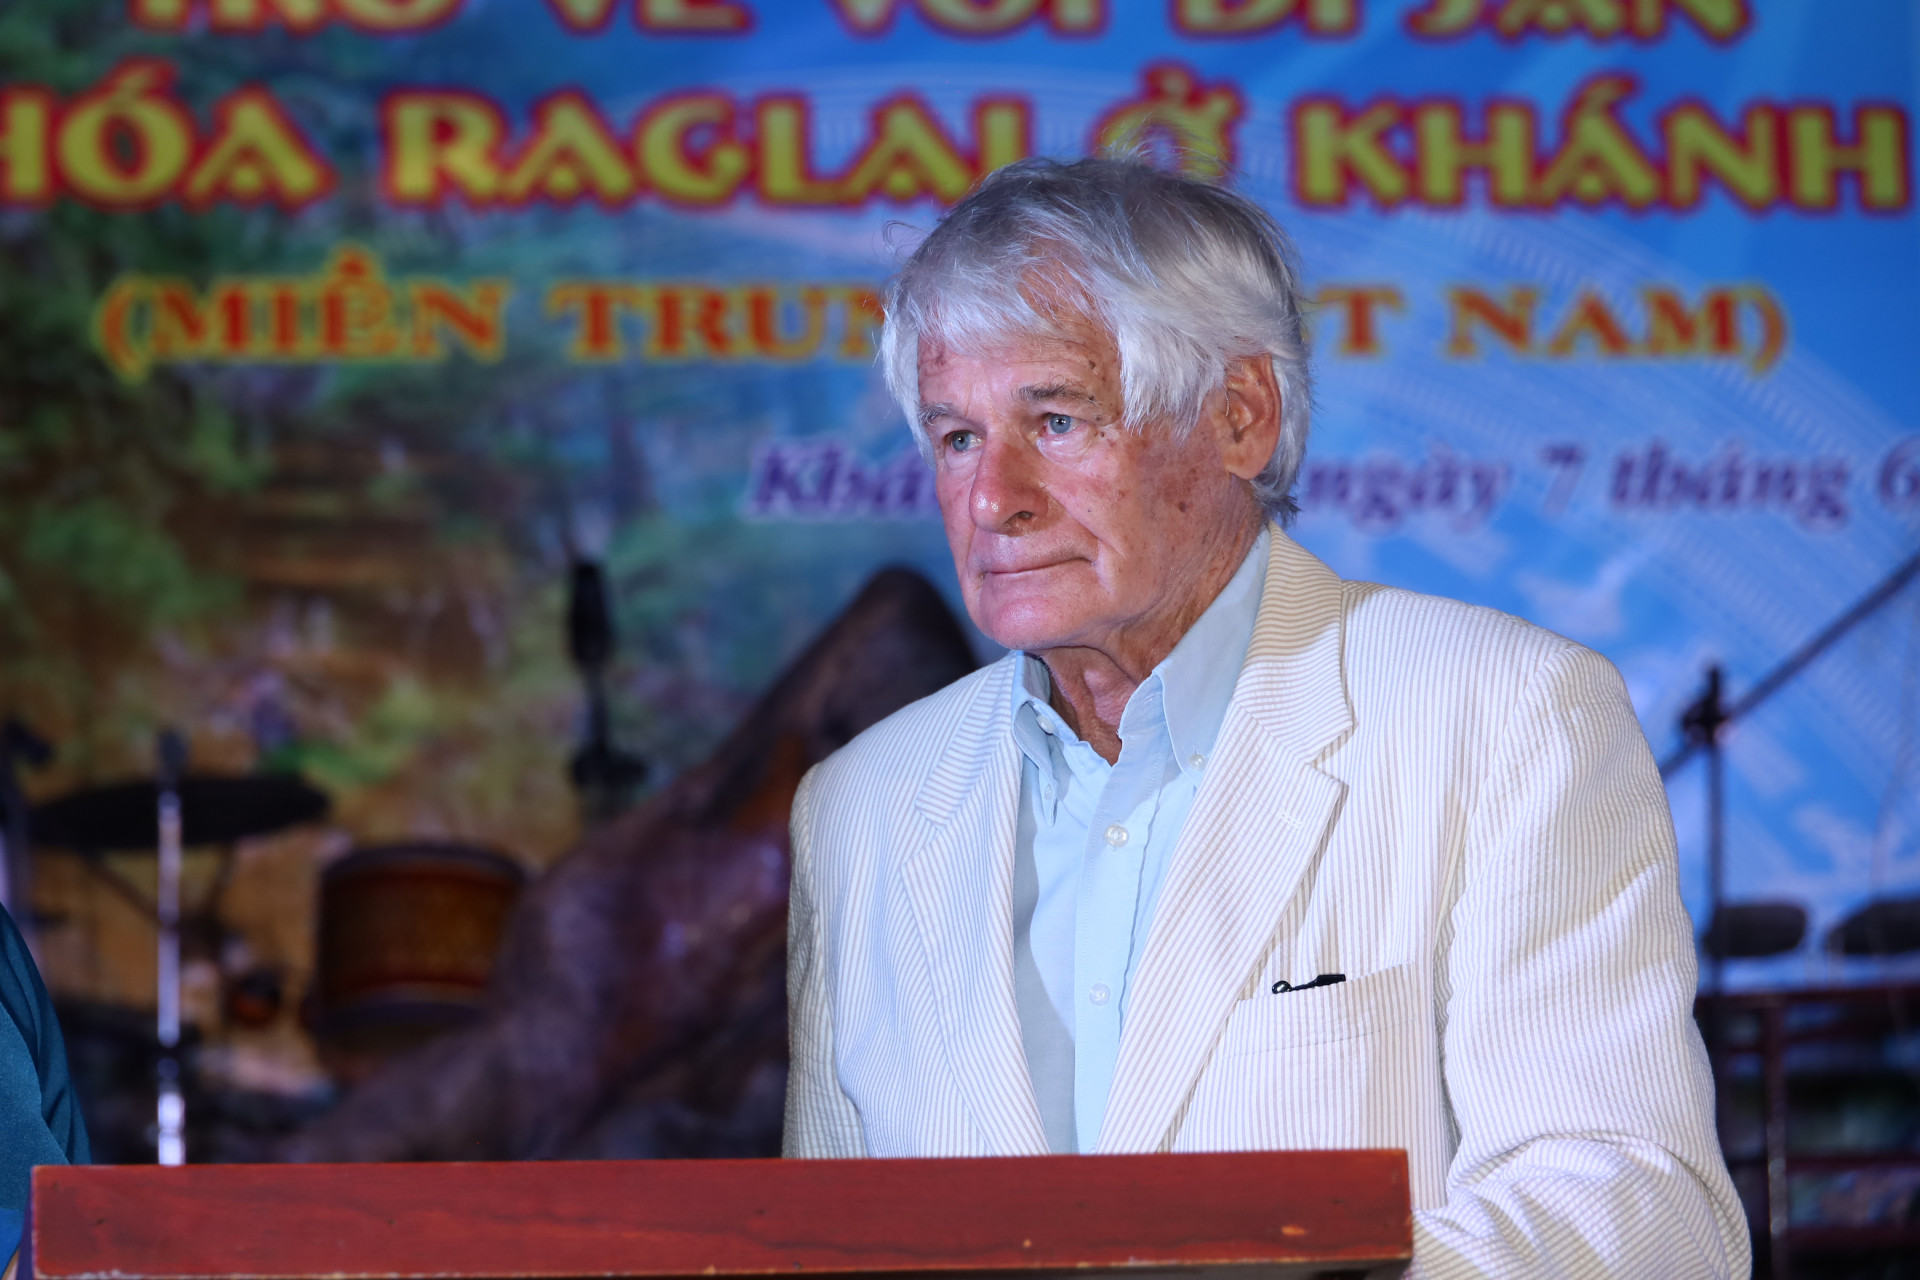 Giáo sư Charles Macdonald trong buổi giới thiệu những bức ảnh về người Raglai.